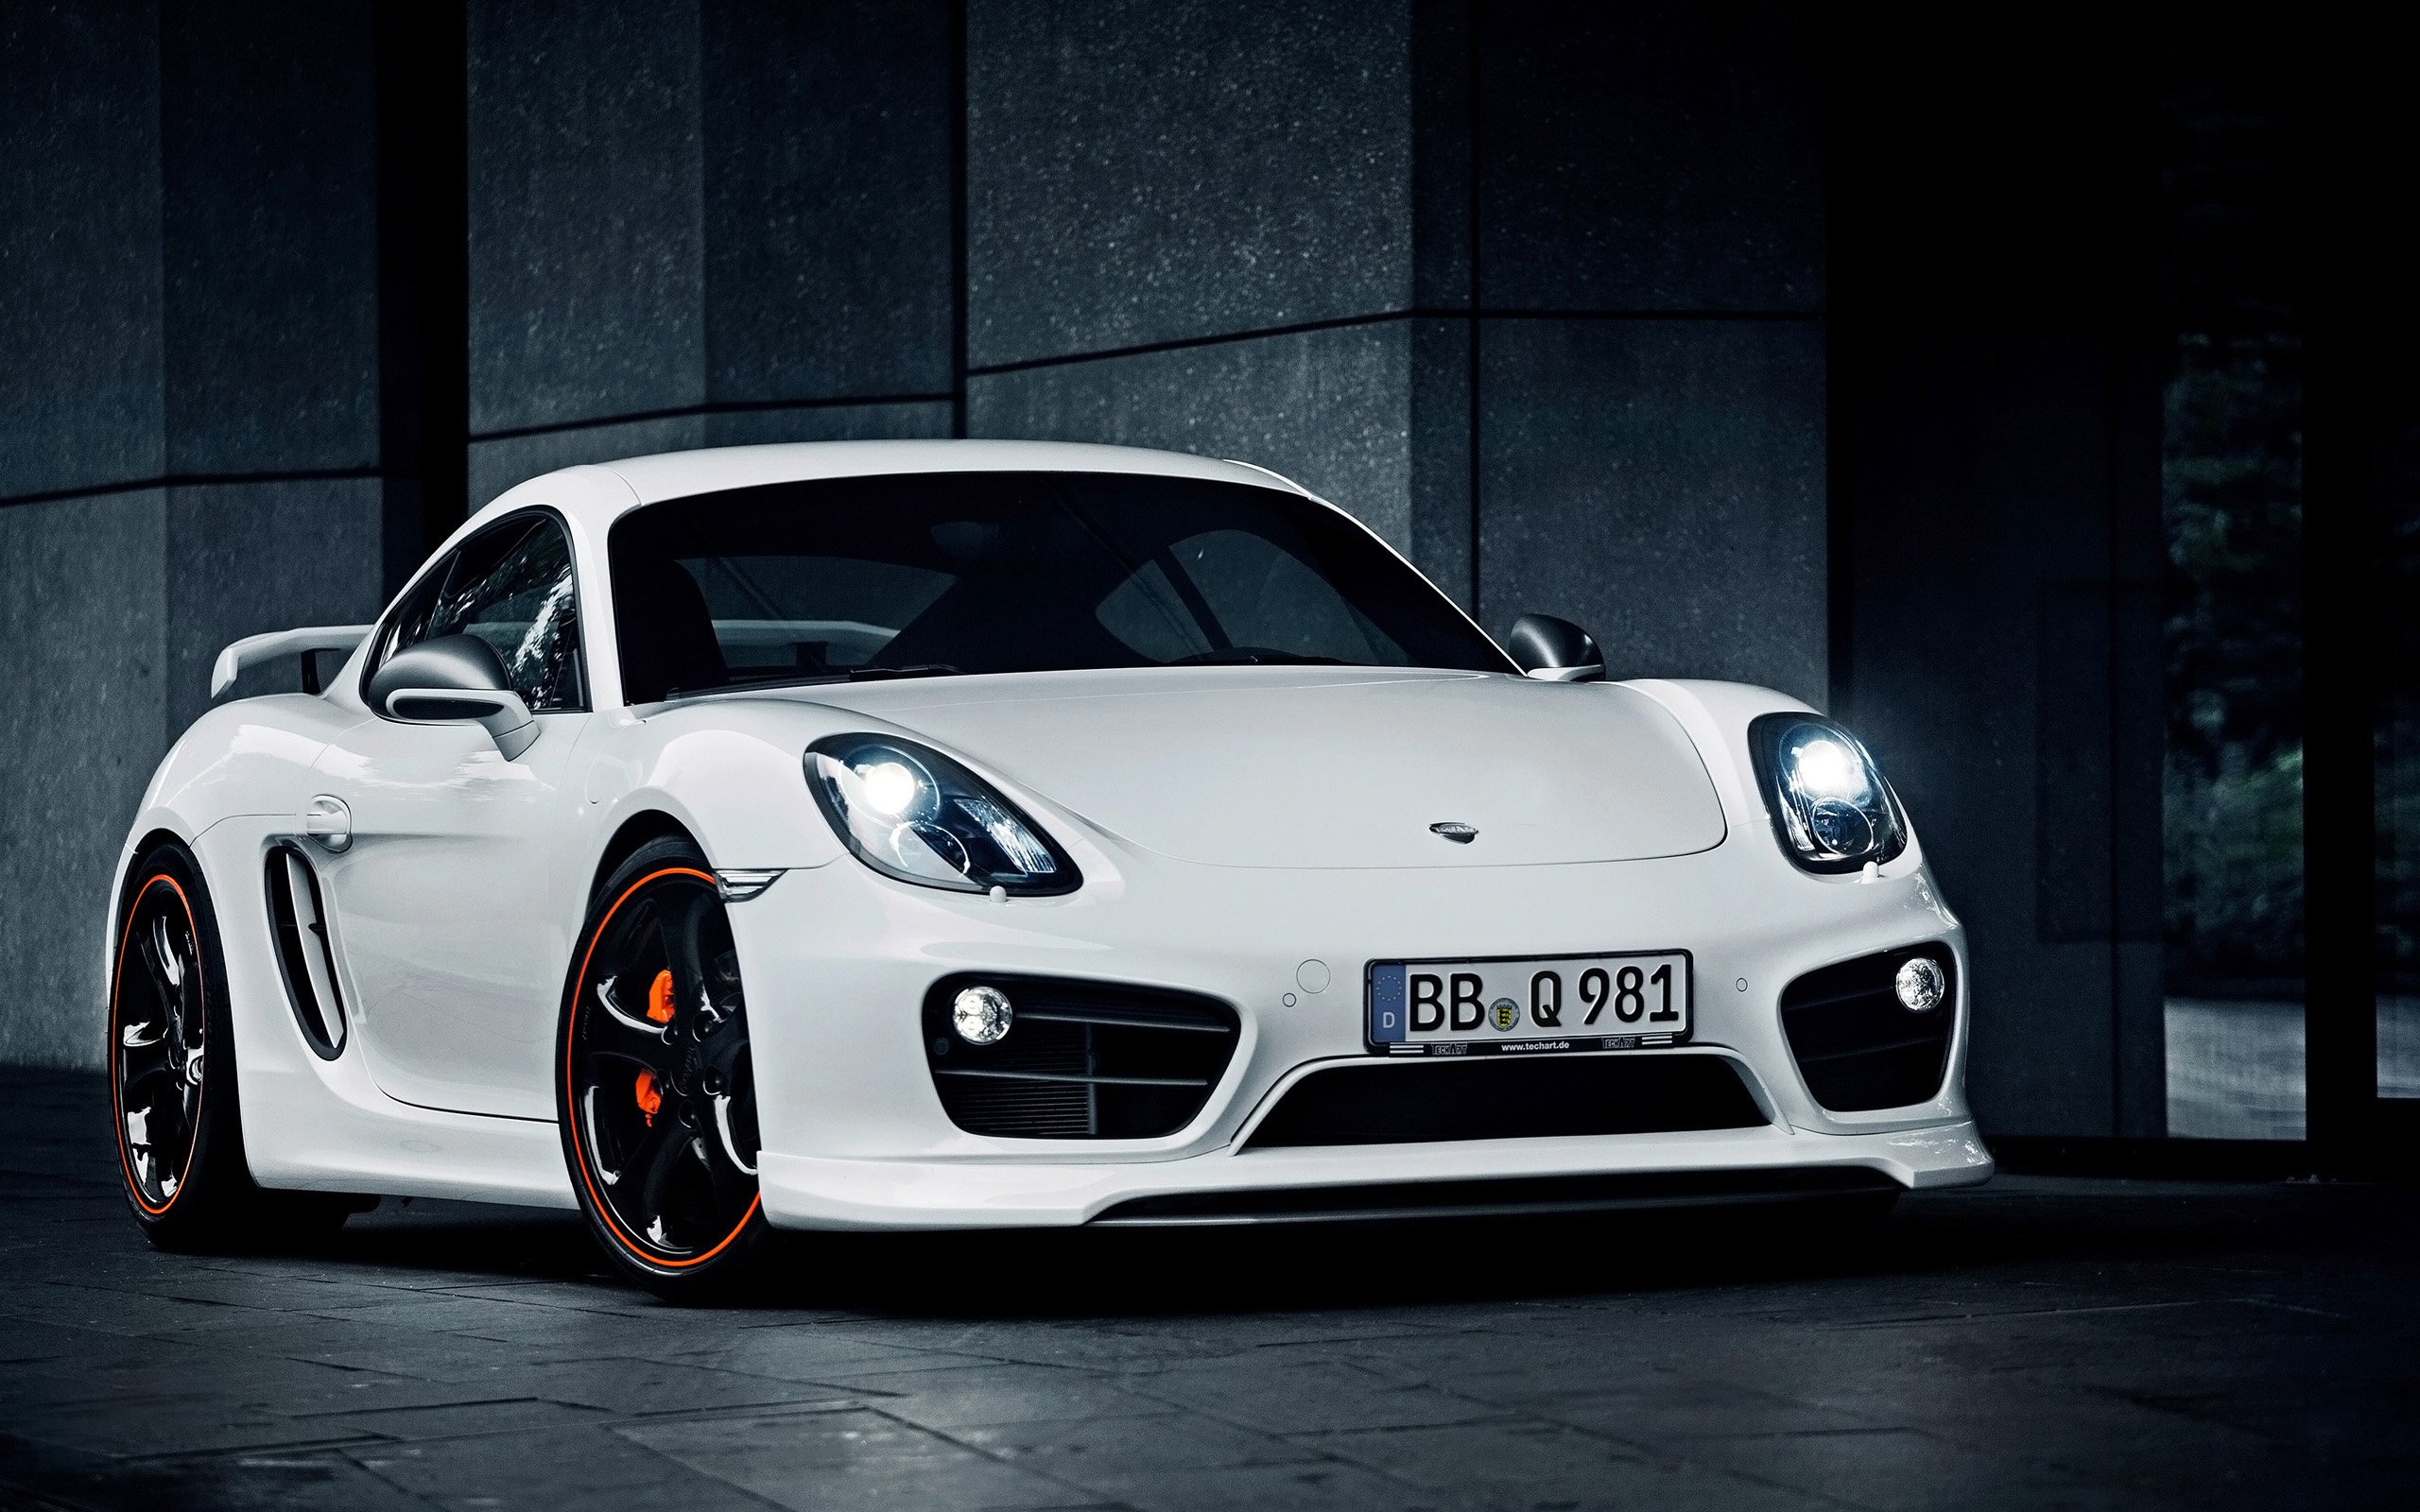 2014 TechArt Porsche Cayman Wallpapers HD Wallpapers